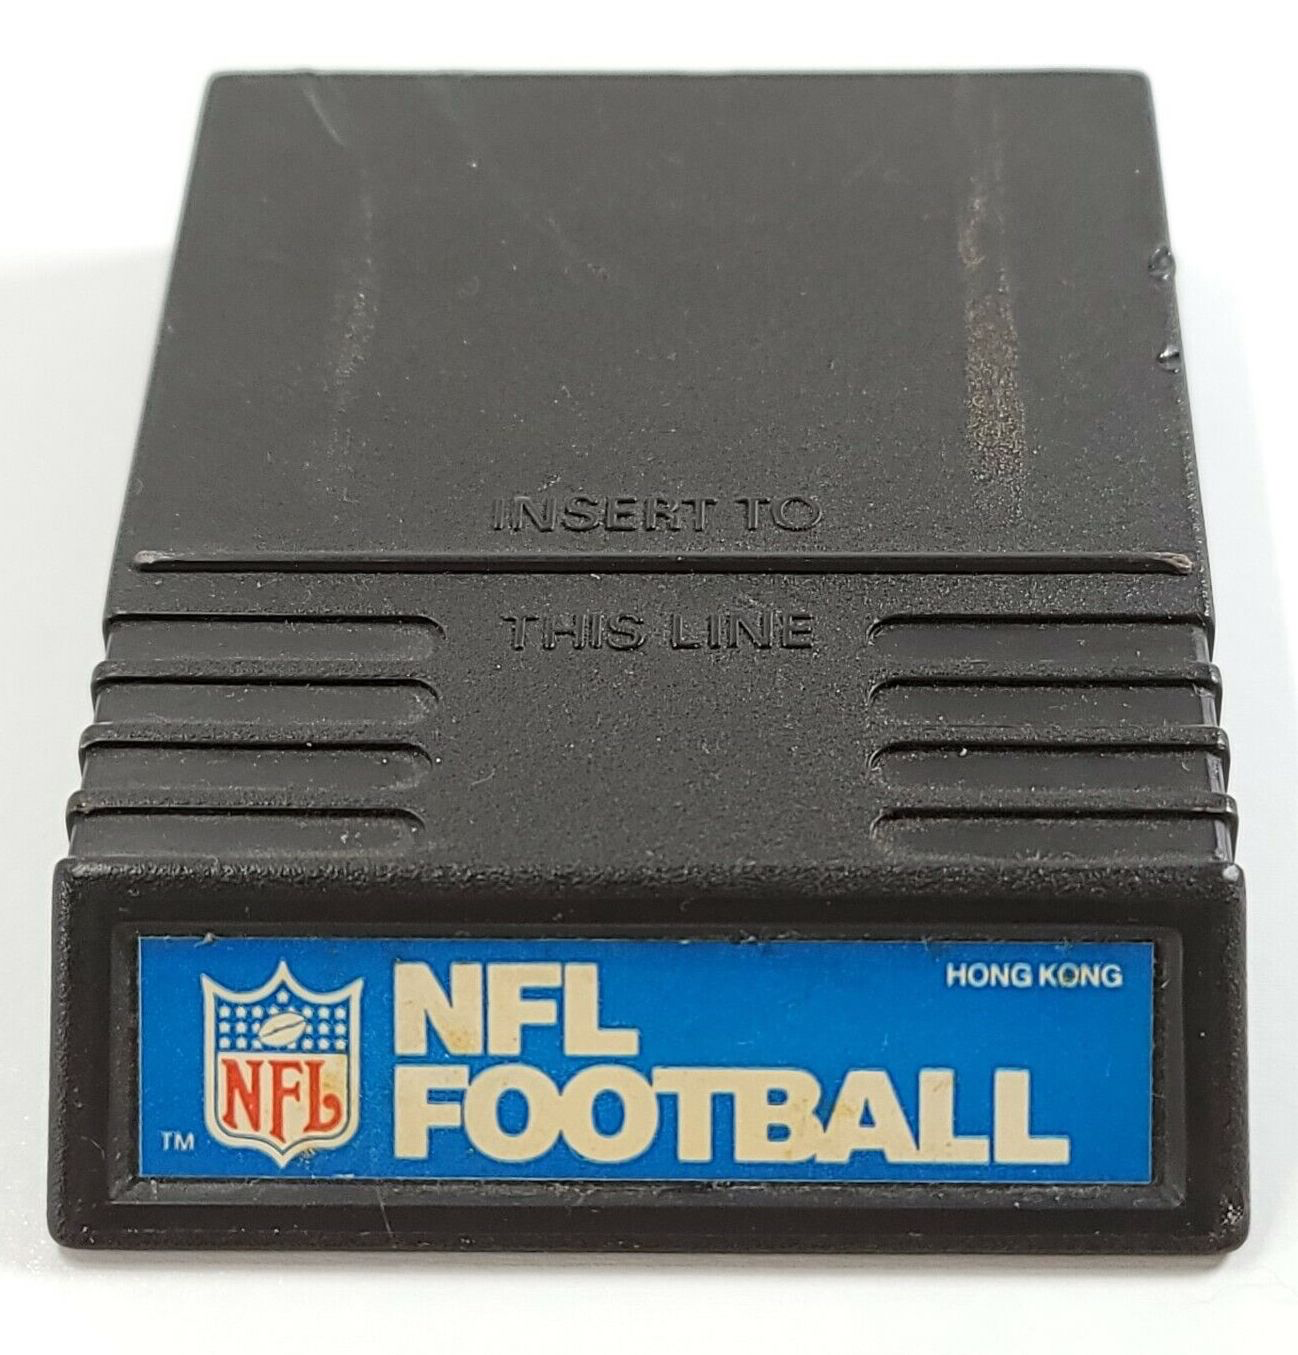 NFL Football - Intellivision